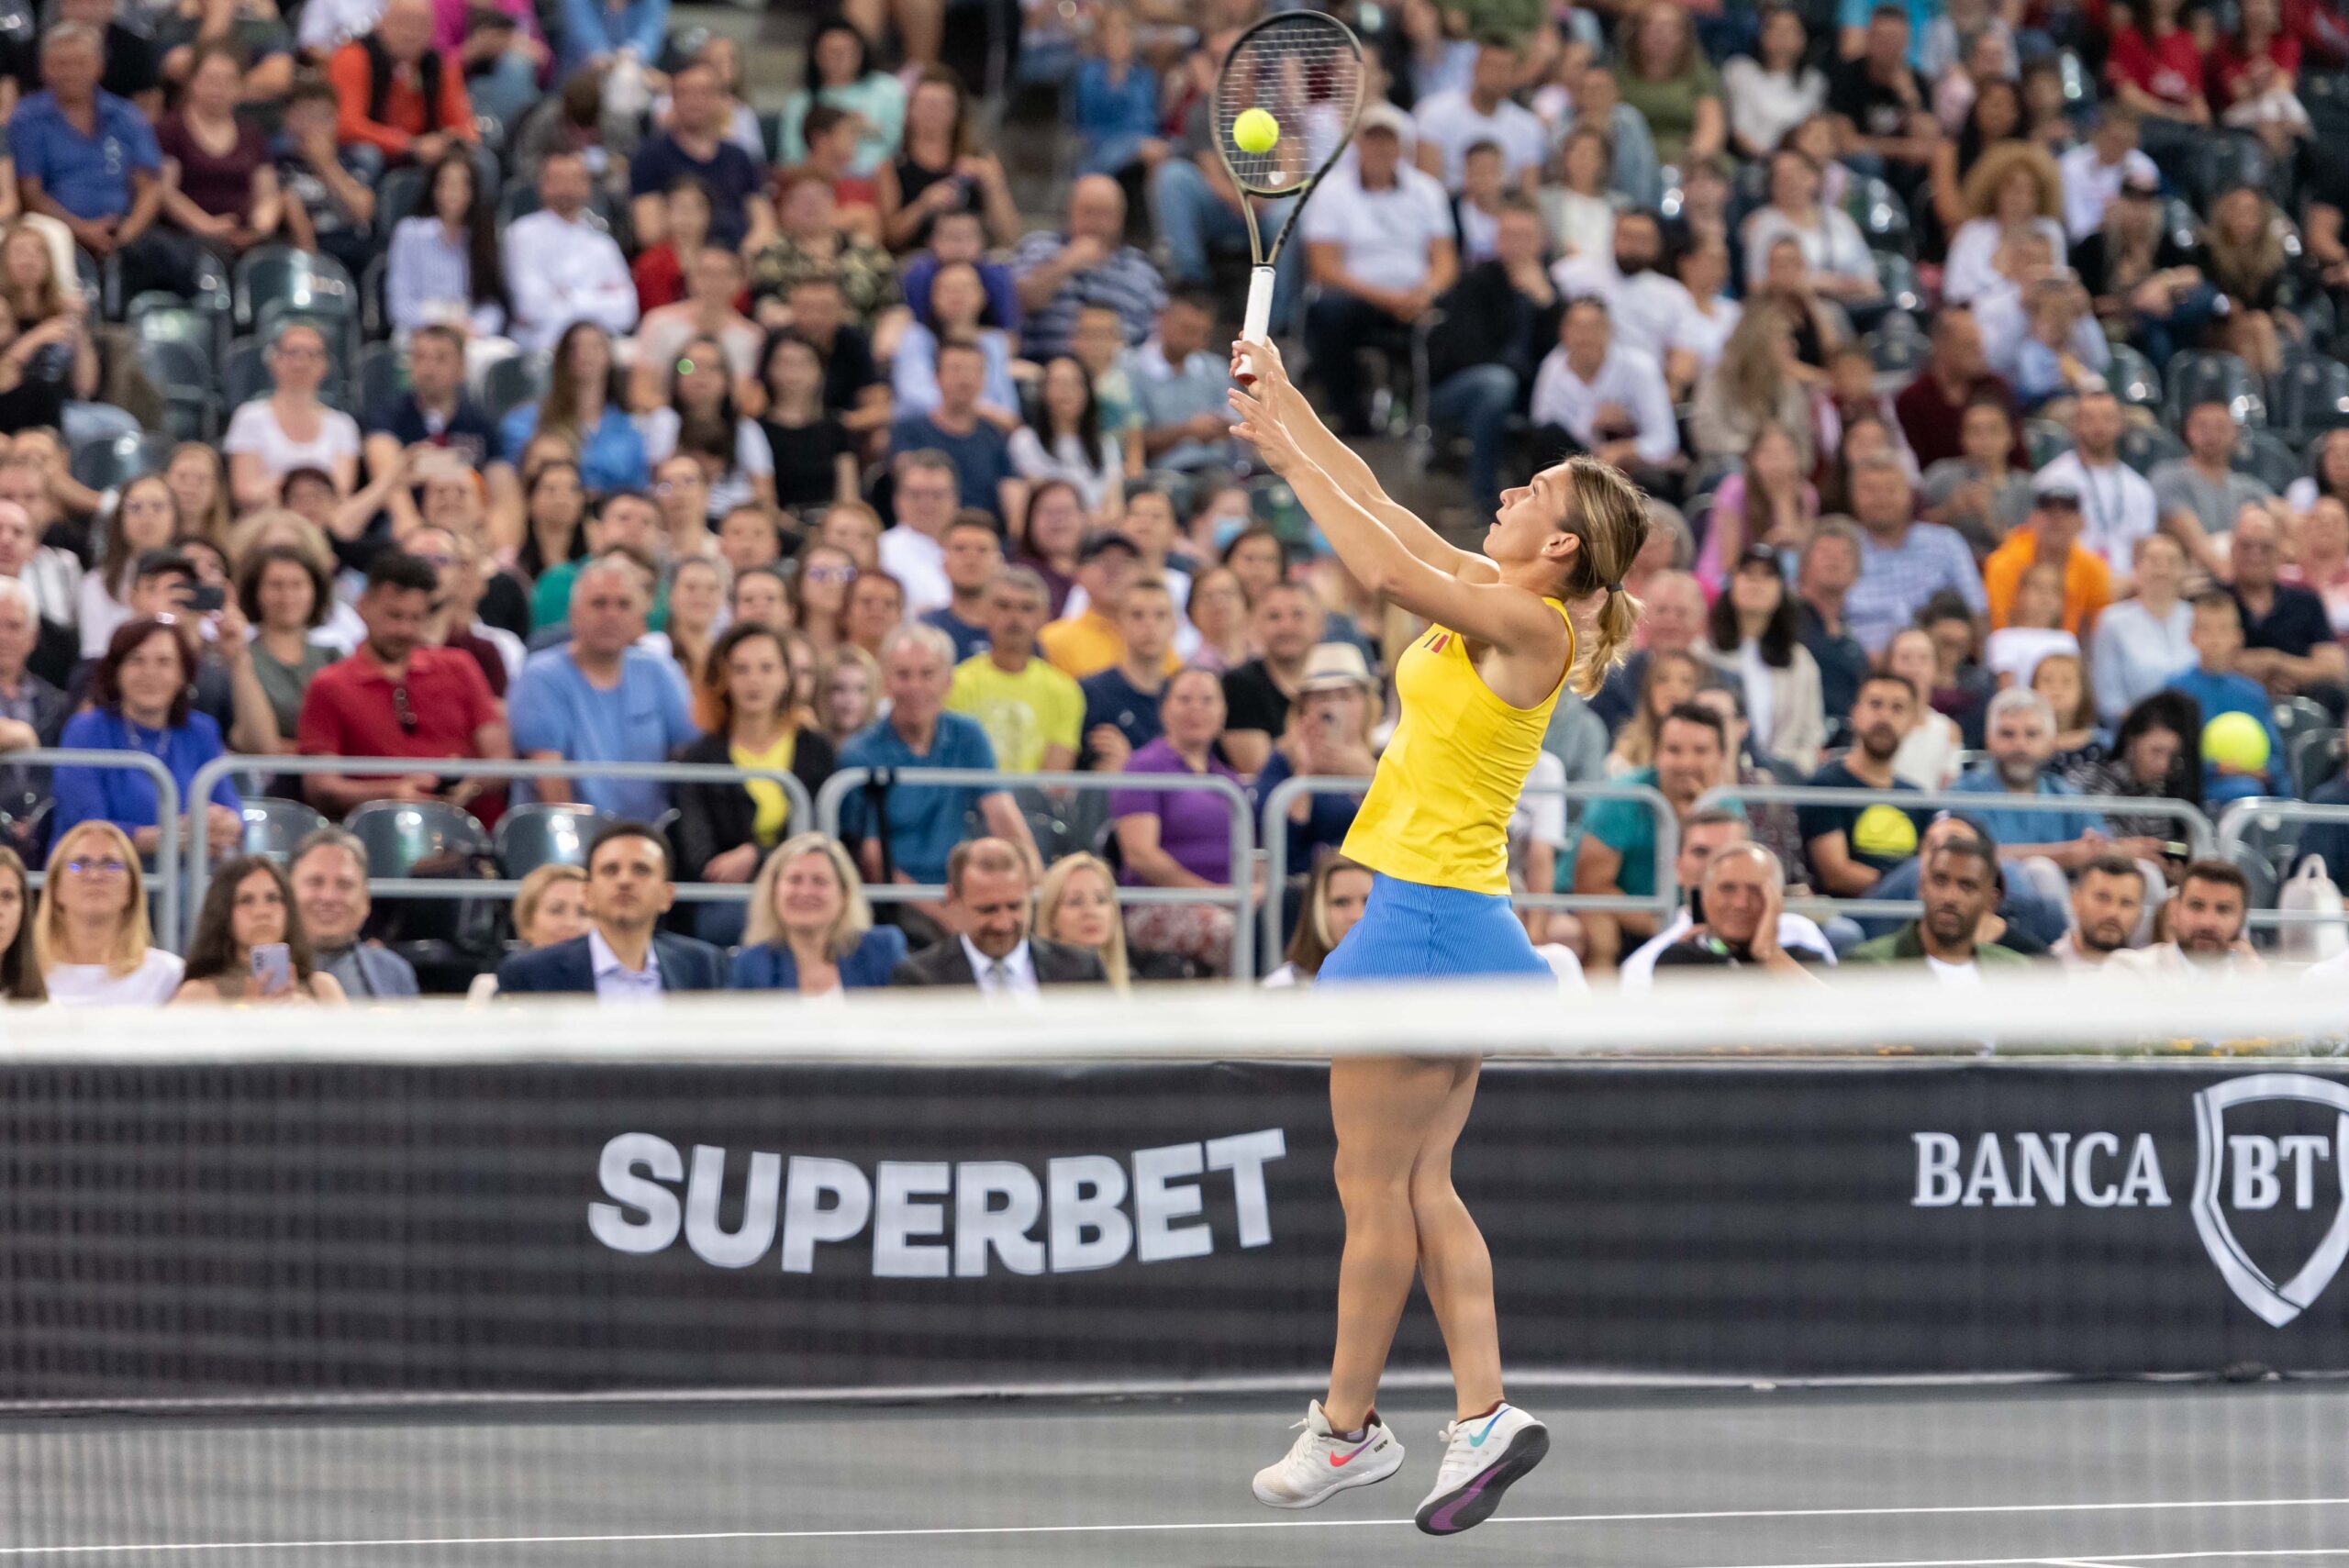 Bucureștiul va avea un nou turneu de tenis de nivelul WTA – Ţiriac Foundation Trophy